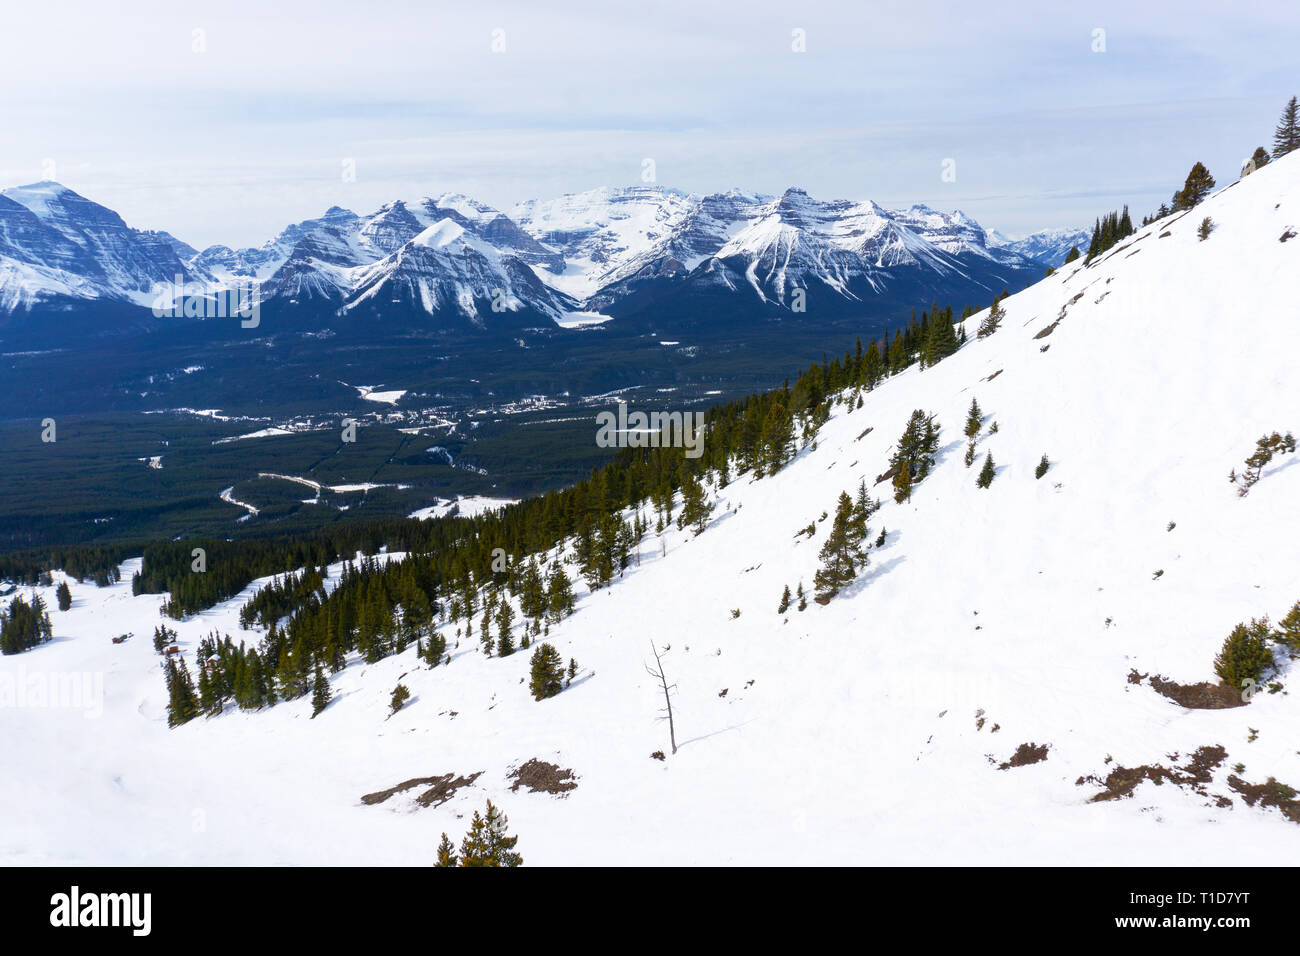 Paysage de montagnes enneigées montrant le mont Victoria glacier des Rocheuses canadiennes au Lac Louise, près de Banff en Alberta, Canada. Banque D'Images